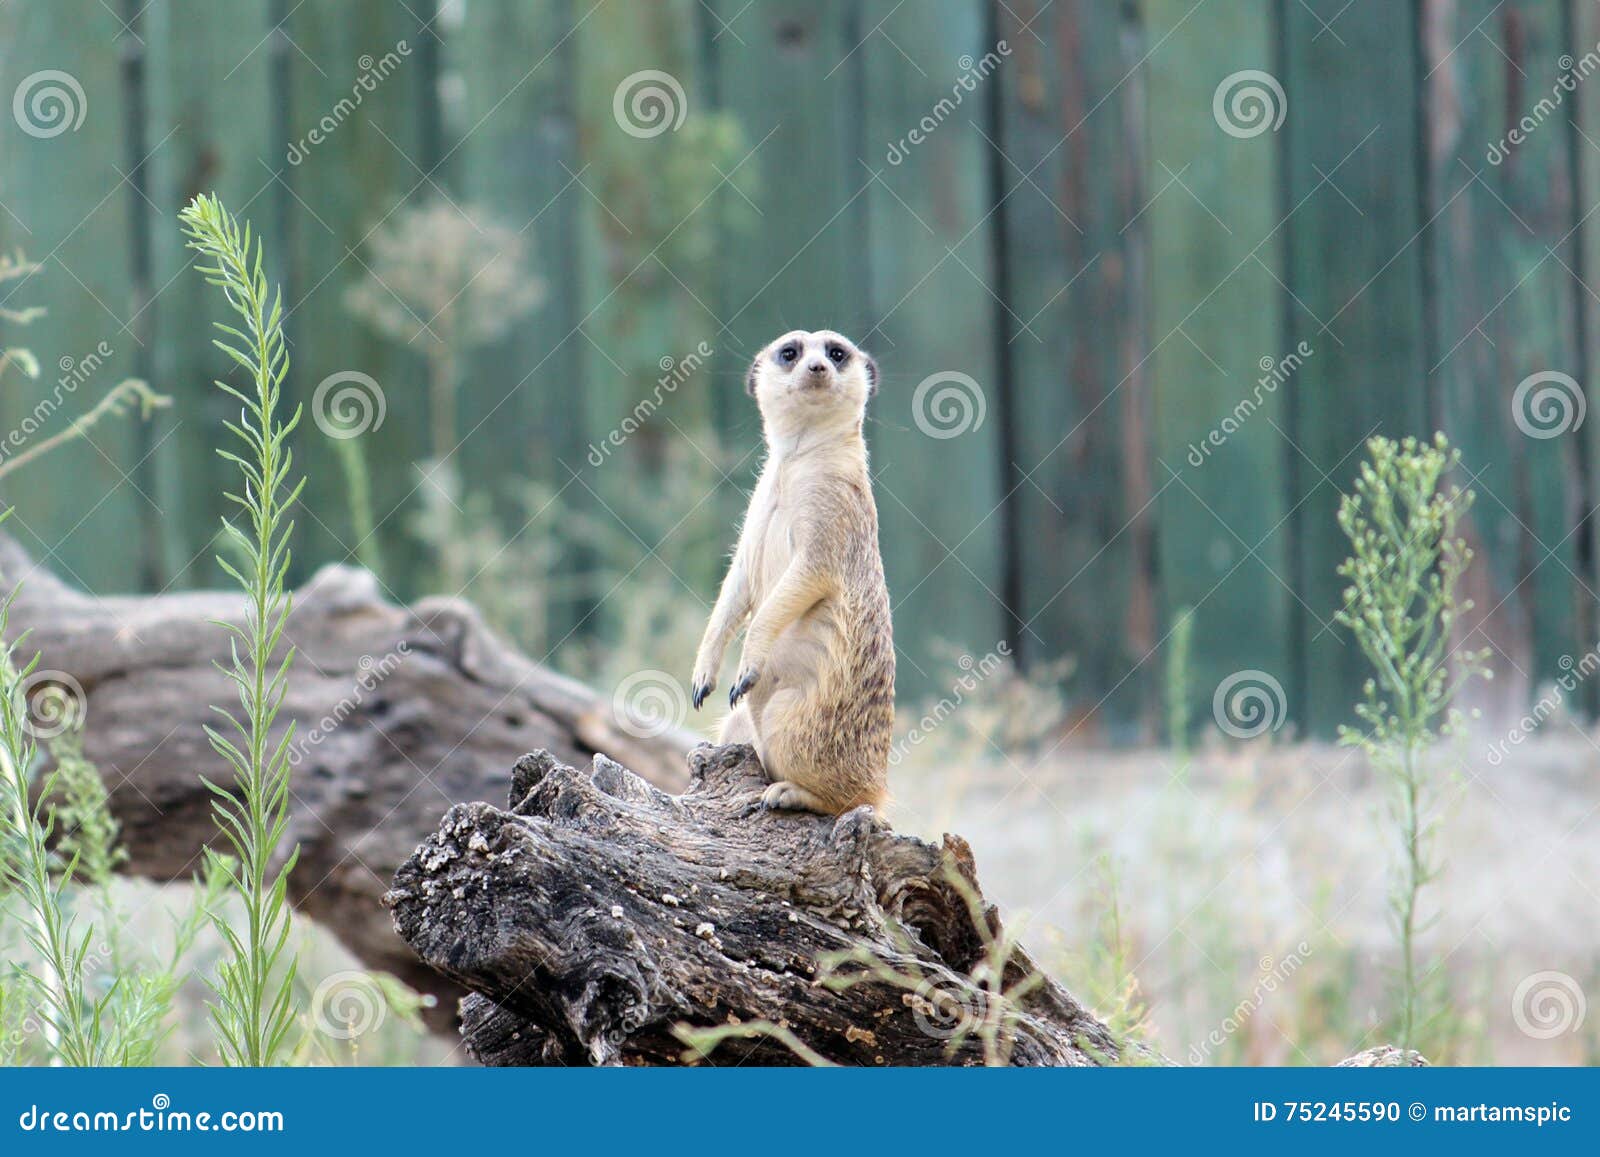 meerkat, suricate